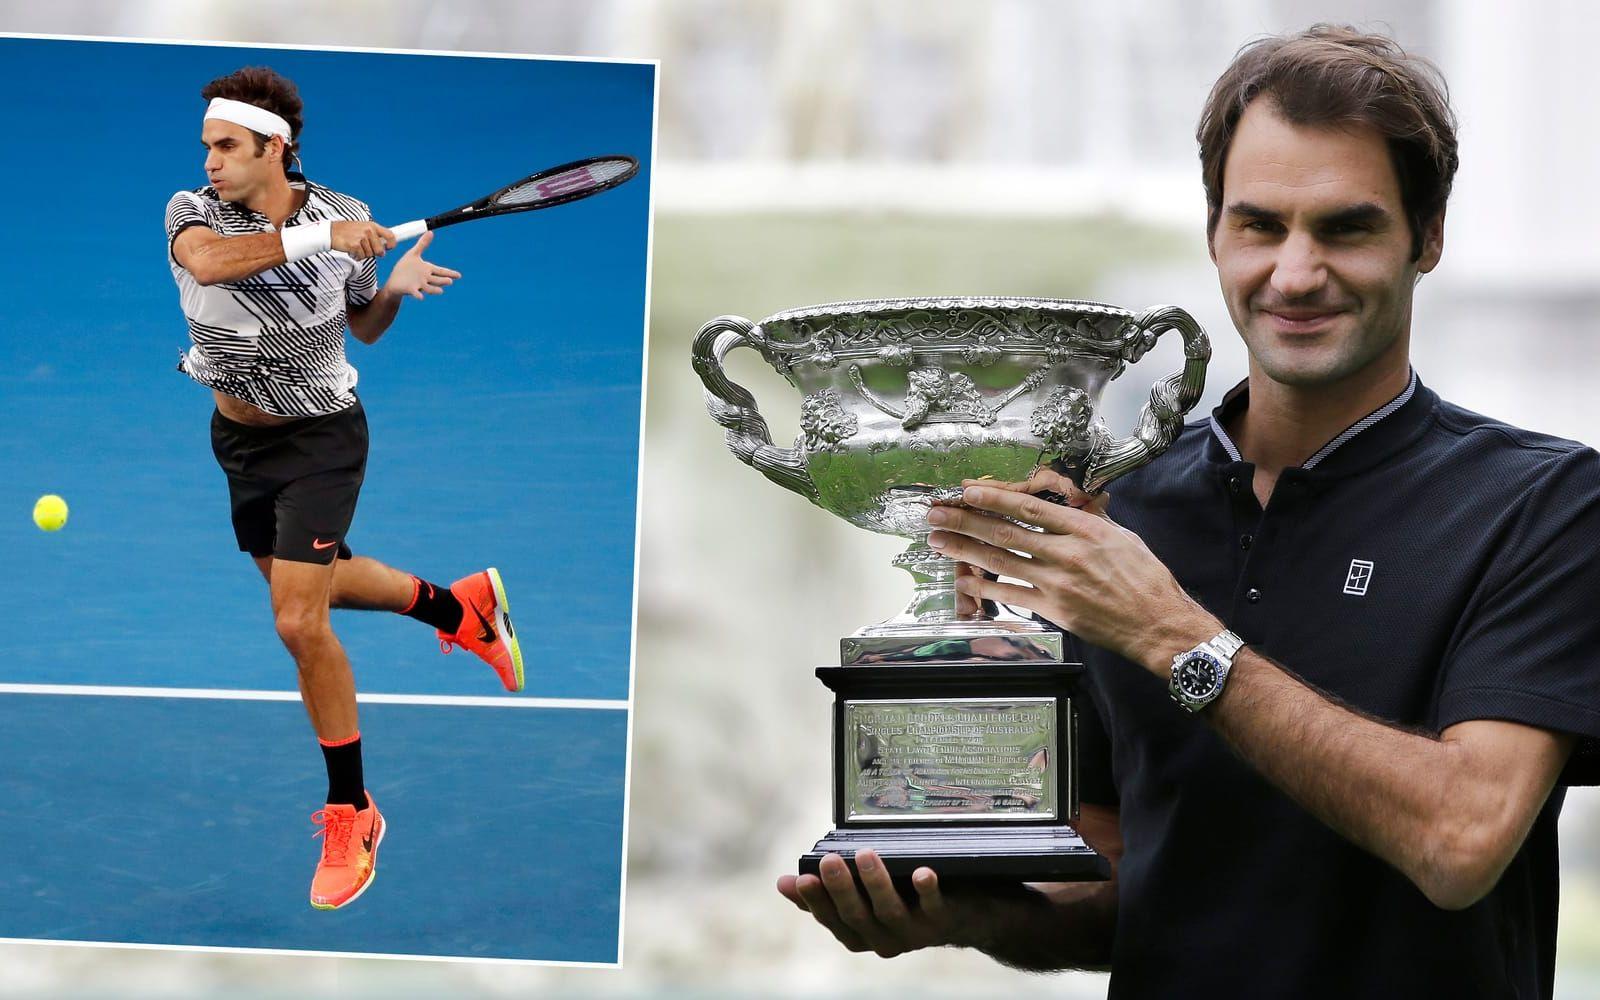 Roger Federer dominerade tennissporten under stora delar av 2000-talet, och schweizaren vann väldigt många grand slam-turneringar. När han var som bäst rankades han som världsetta 237 veckor i rad – det känns som ett oslagbart rekord. Foto: TT